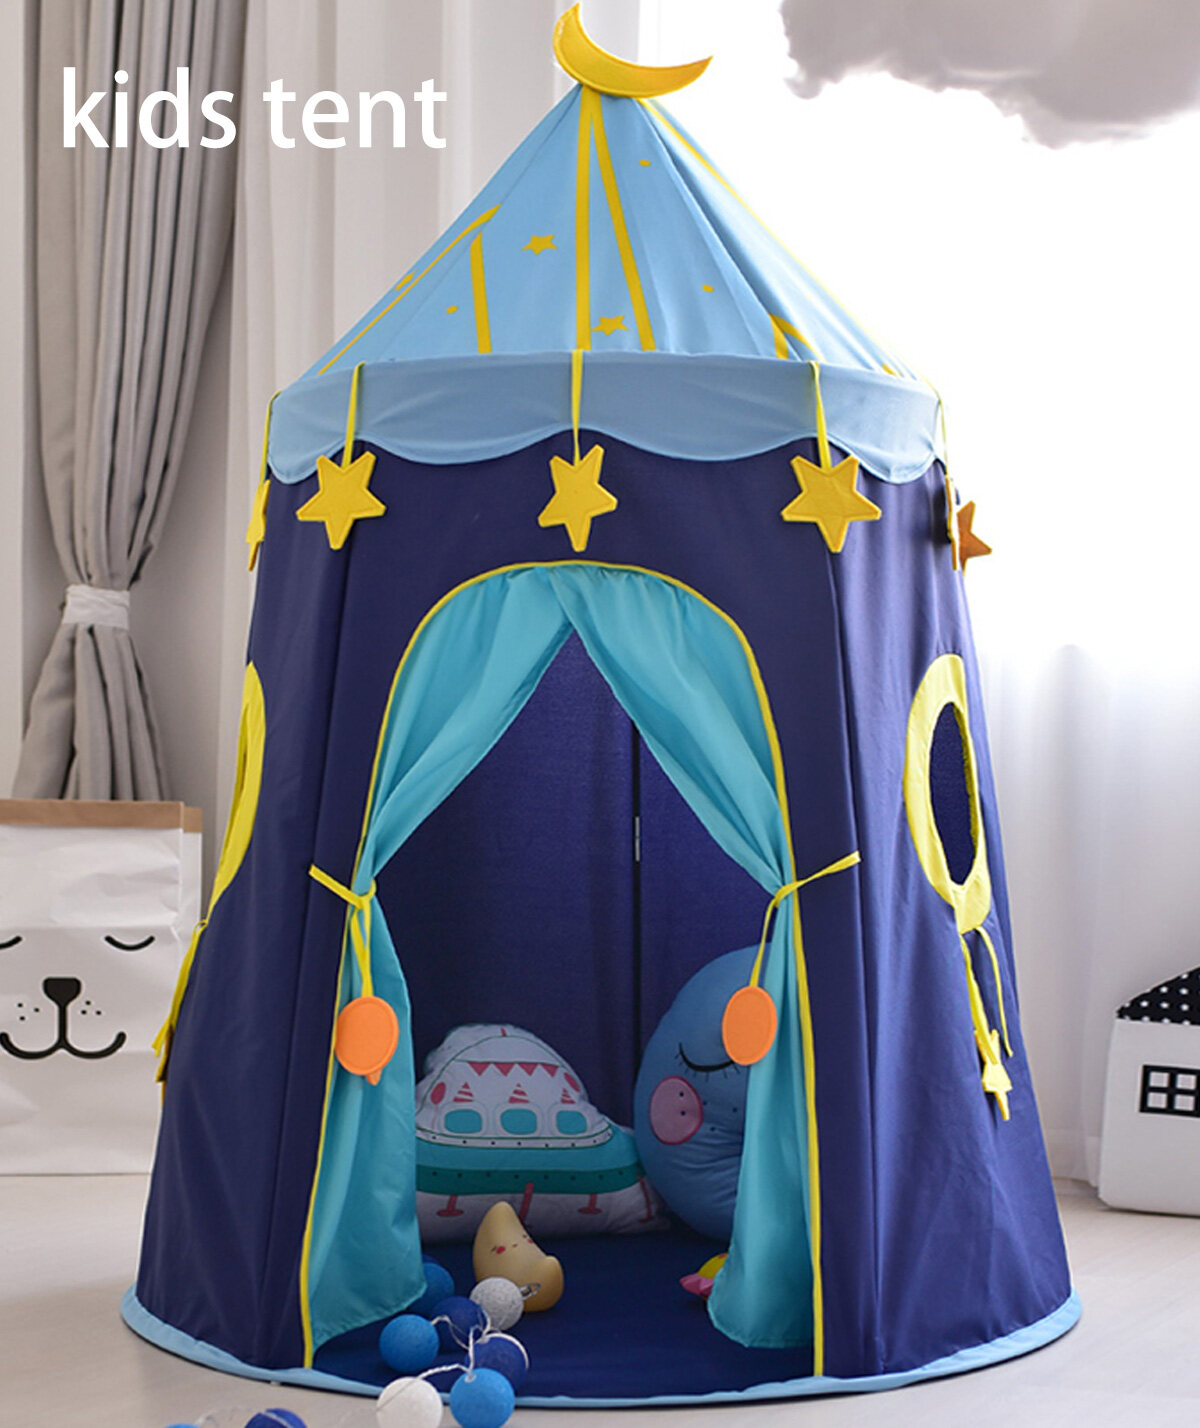 portable folding princess castle tent